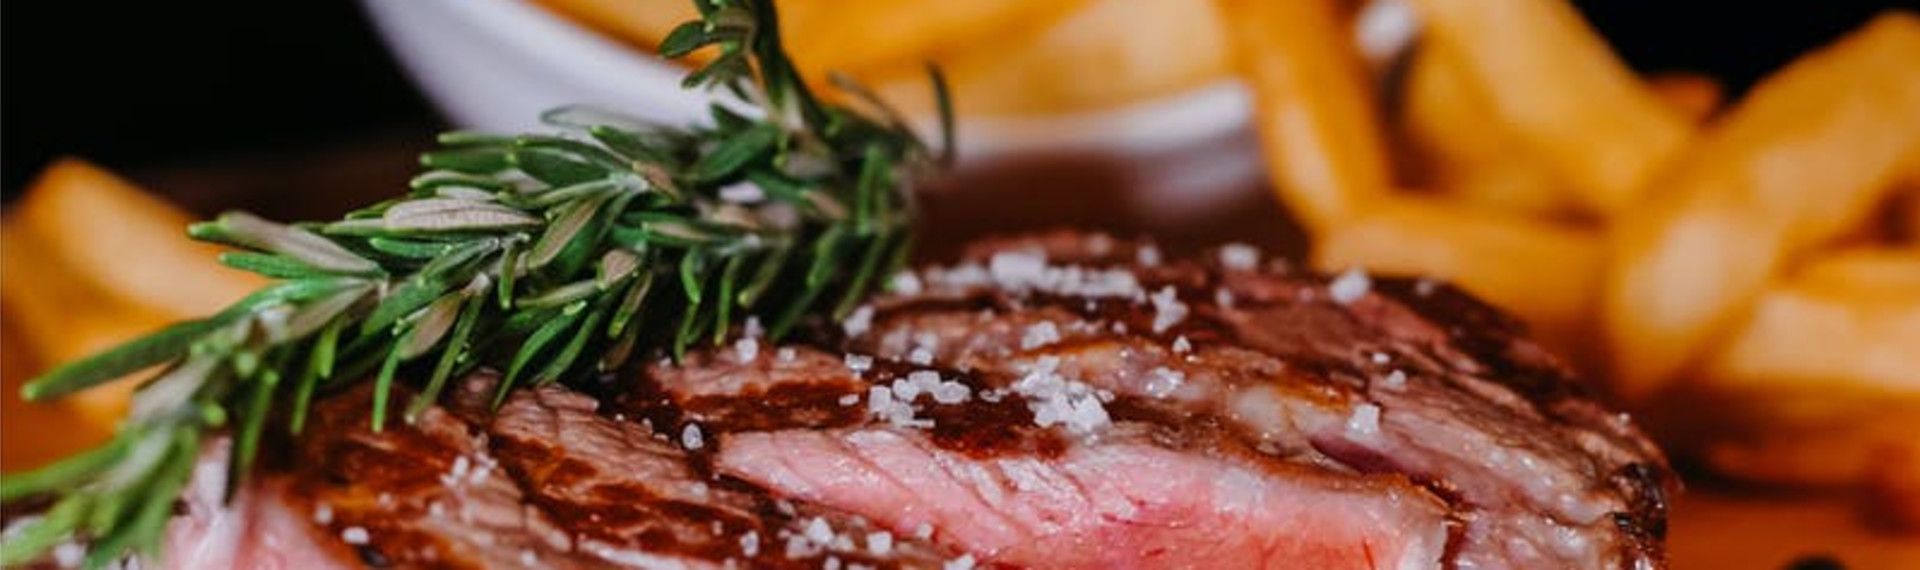 Steak-Menü in Straßburg | Jetzt mit Pissup Reisen buchen!